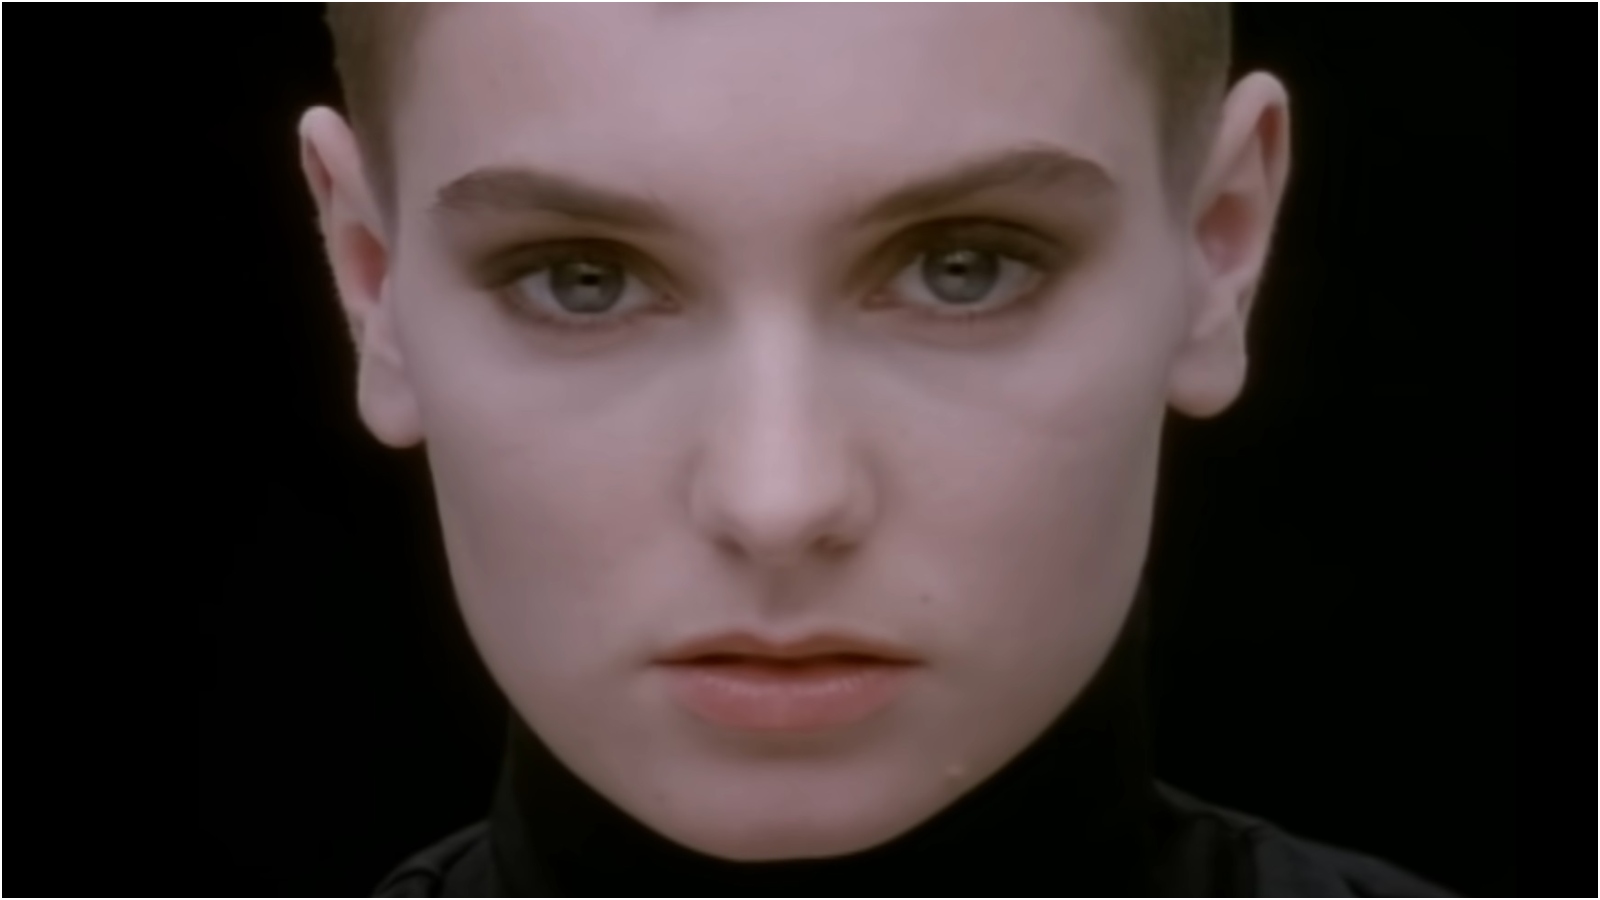 Famosos lamentam morte de Sinéad O'Connor: 'Nada se compara a você'